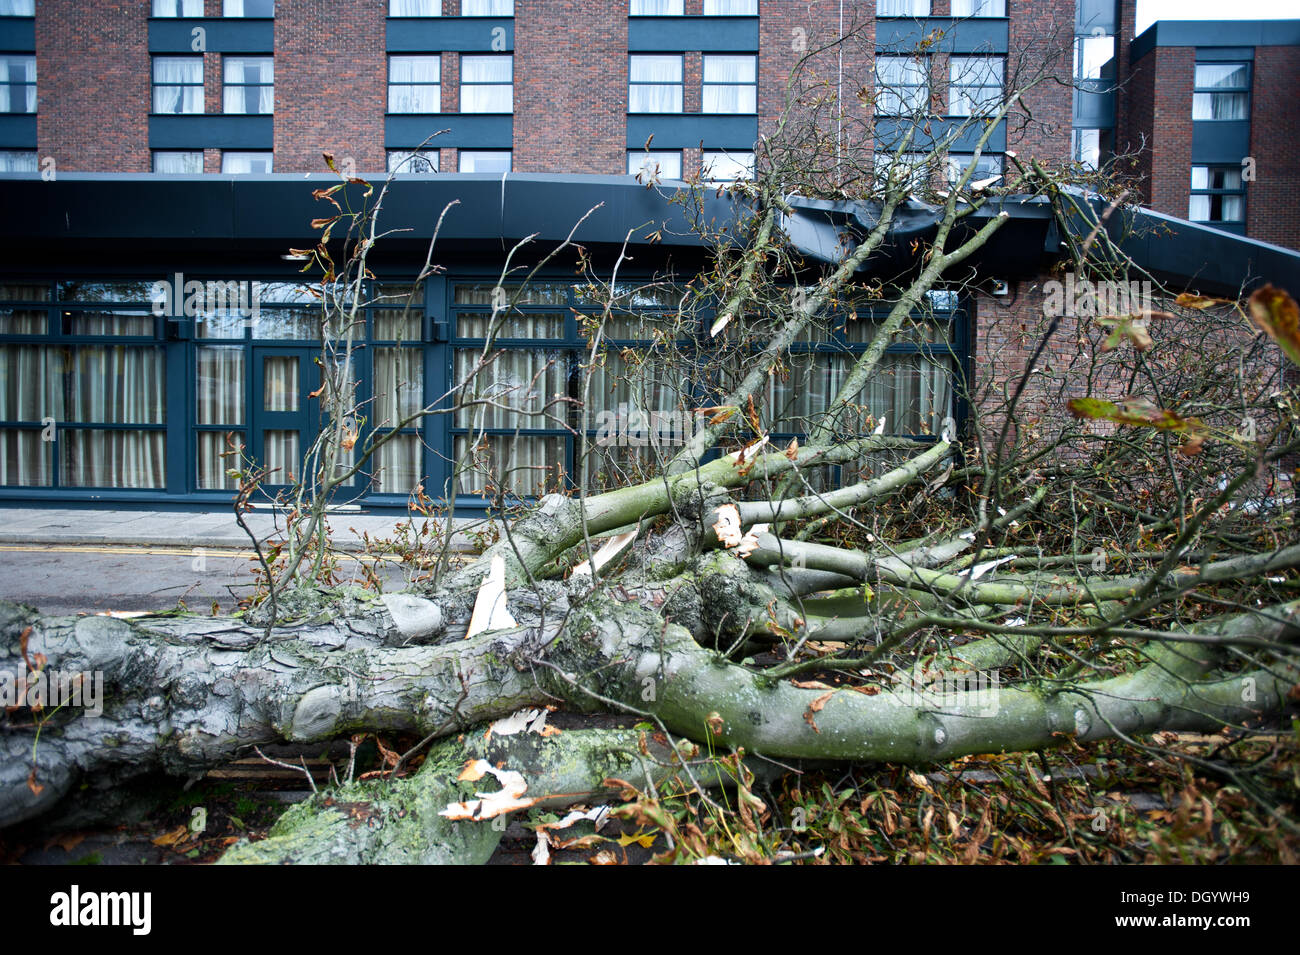 Londres, Reino Unido - 28 de octubre de 2013: un árbol caído golpea el techo del hotel Double Tree by Hilton en Ealing, pues la ciudad afectados por la tormenta.La tormenta, denominada St Jude, trajo el clima más ventosos para golpear el Reino Unido desde 1987. Crédito: Piero Cruciatti/Alamy Live News Foto de stock